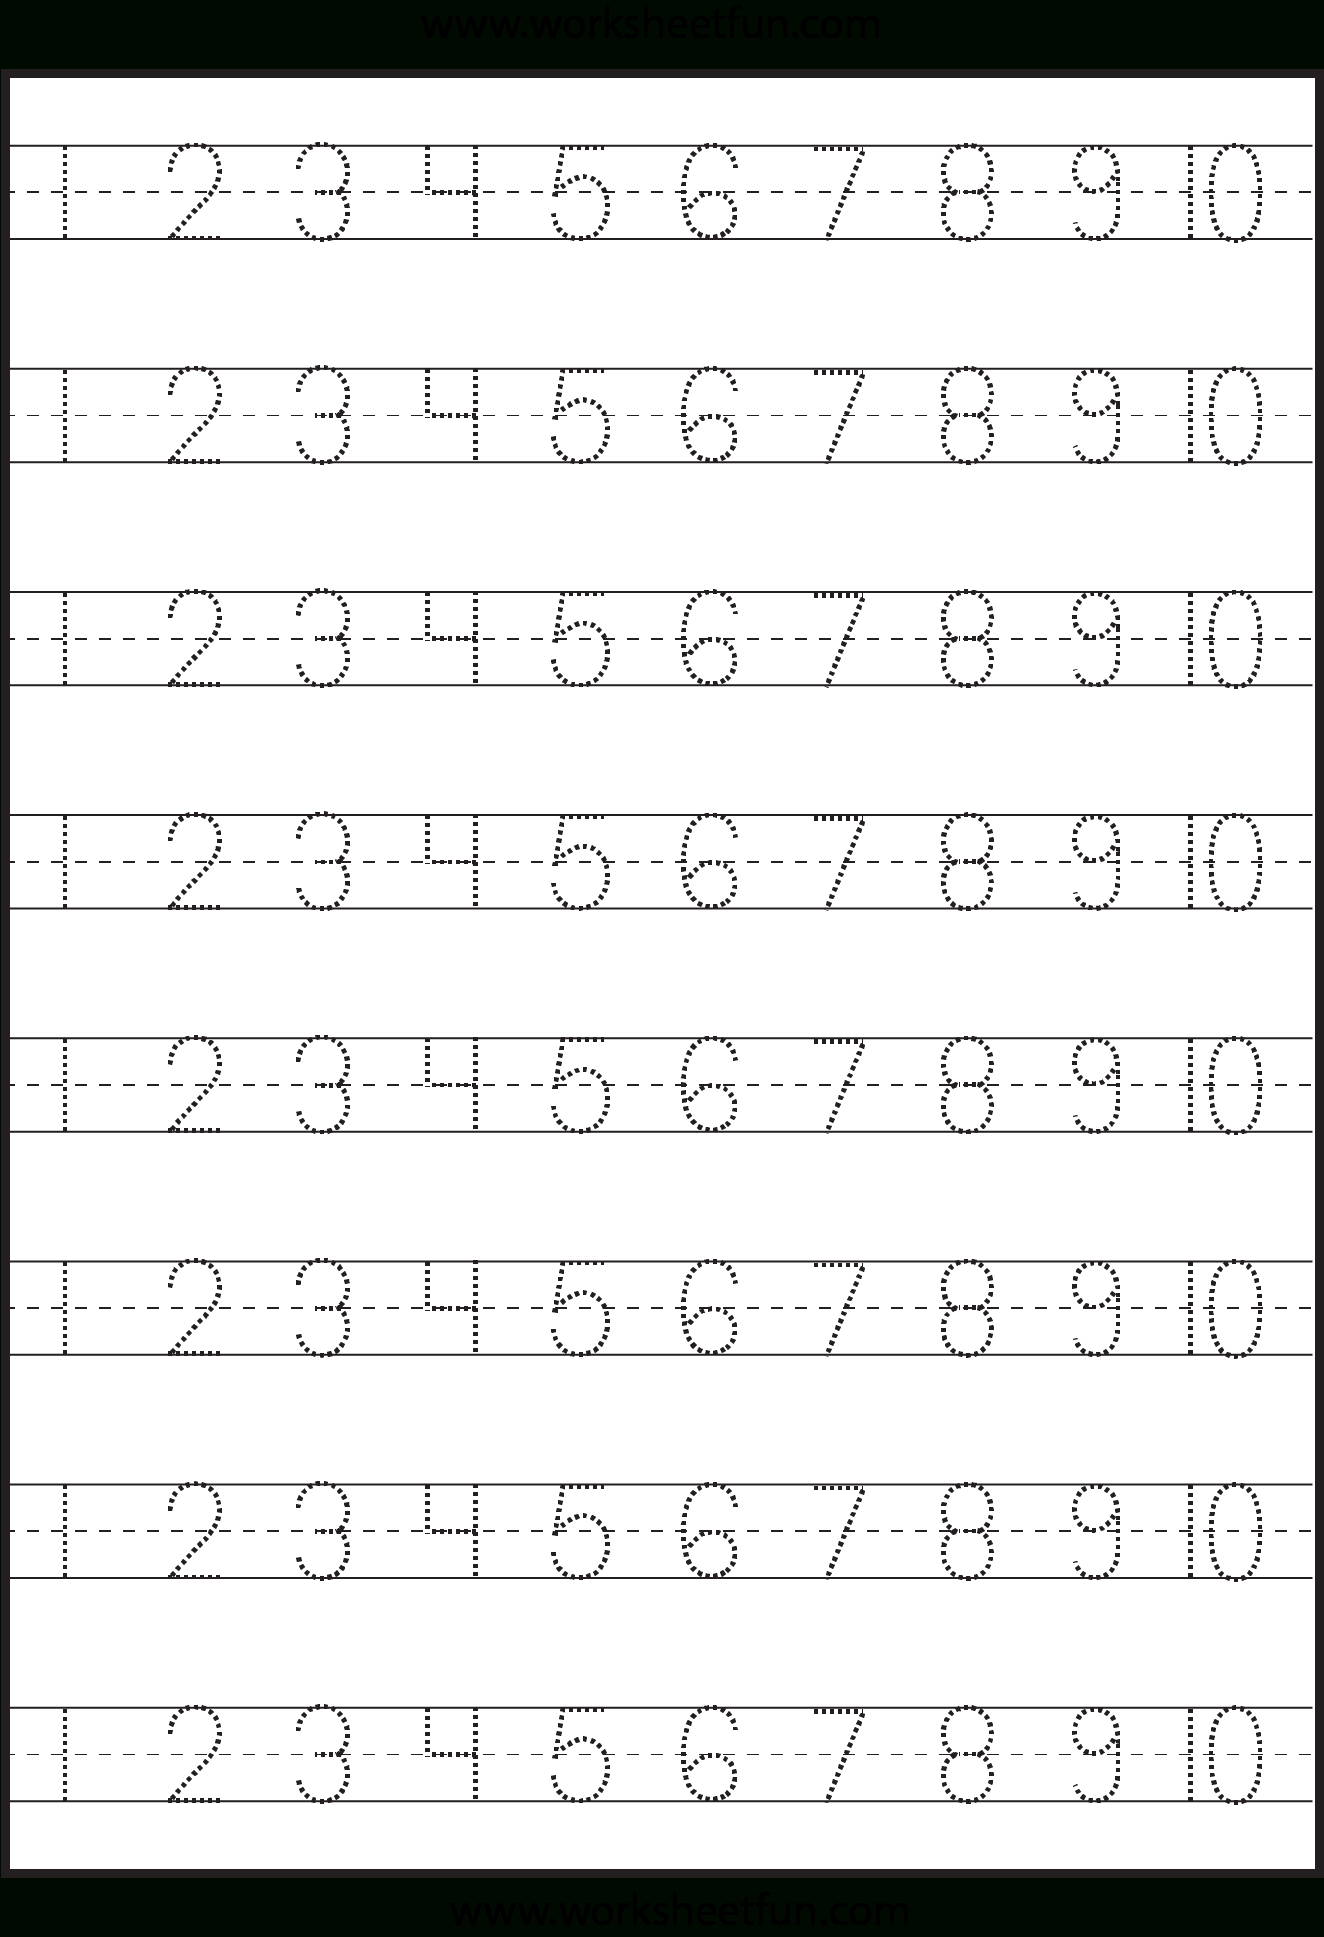 Number Tracing – 1-10 – Worksheet / Free Printable Worksheets | Free Printable Tracing Numbers 1 20 Worksheets